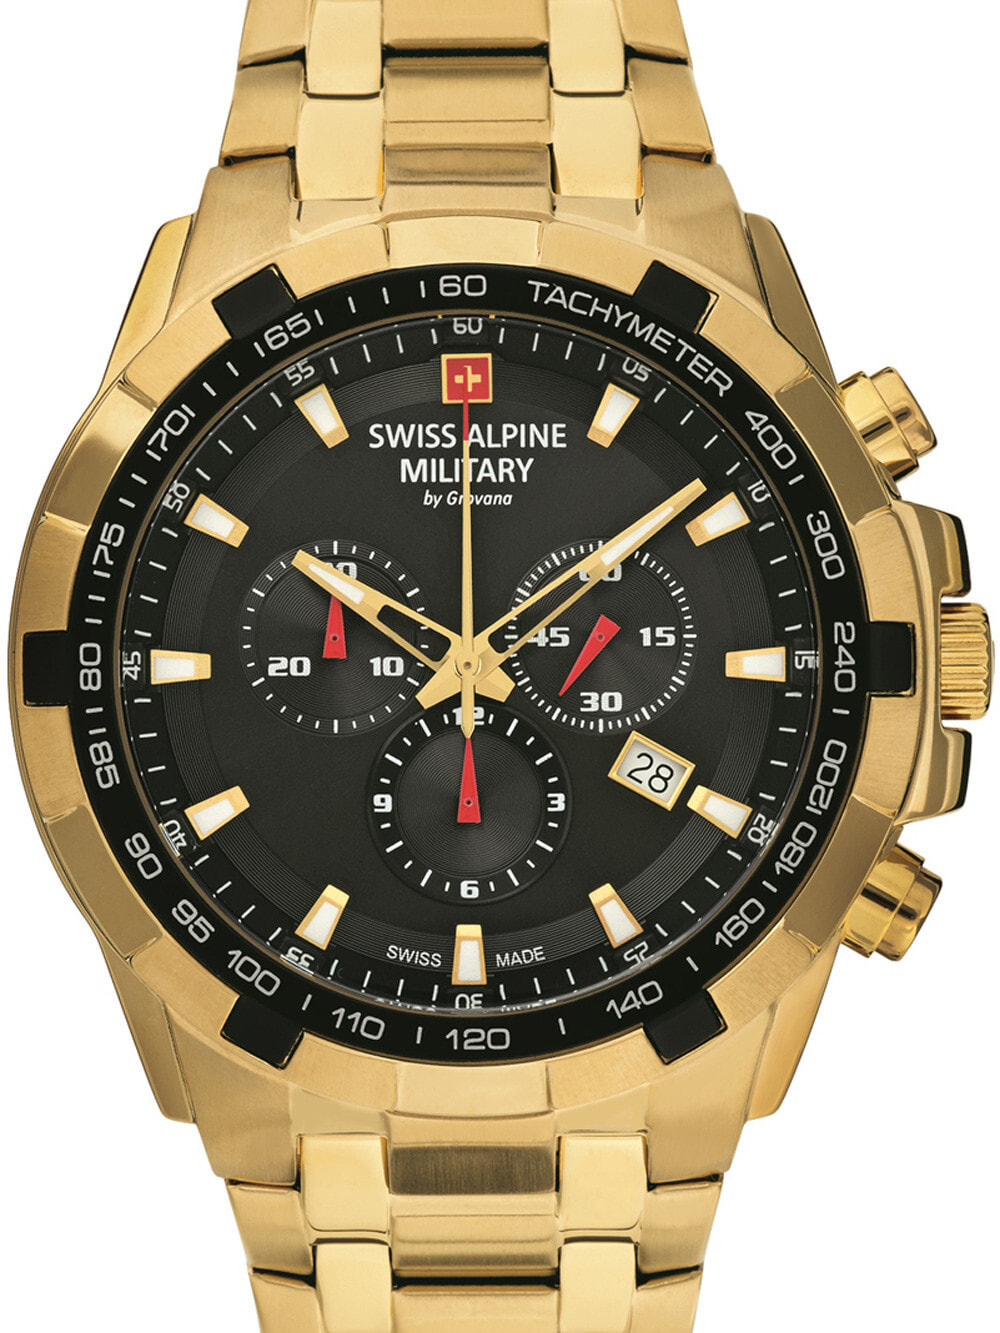 Мужские наручные часы с золотистым браслетом Swiss Alpine Military 7043.9117 chrono 46mm 10ATM